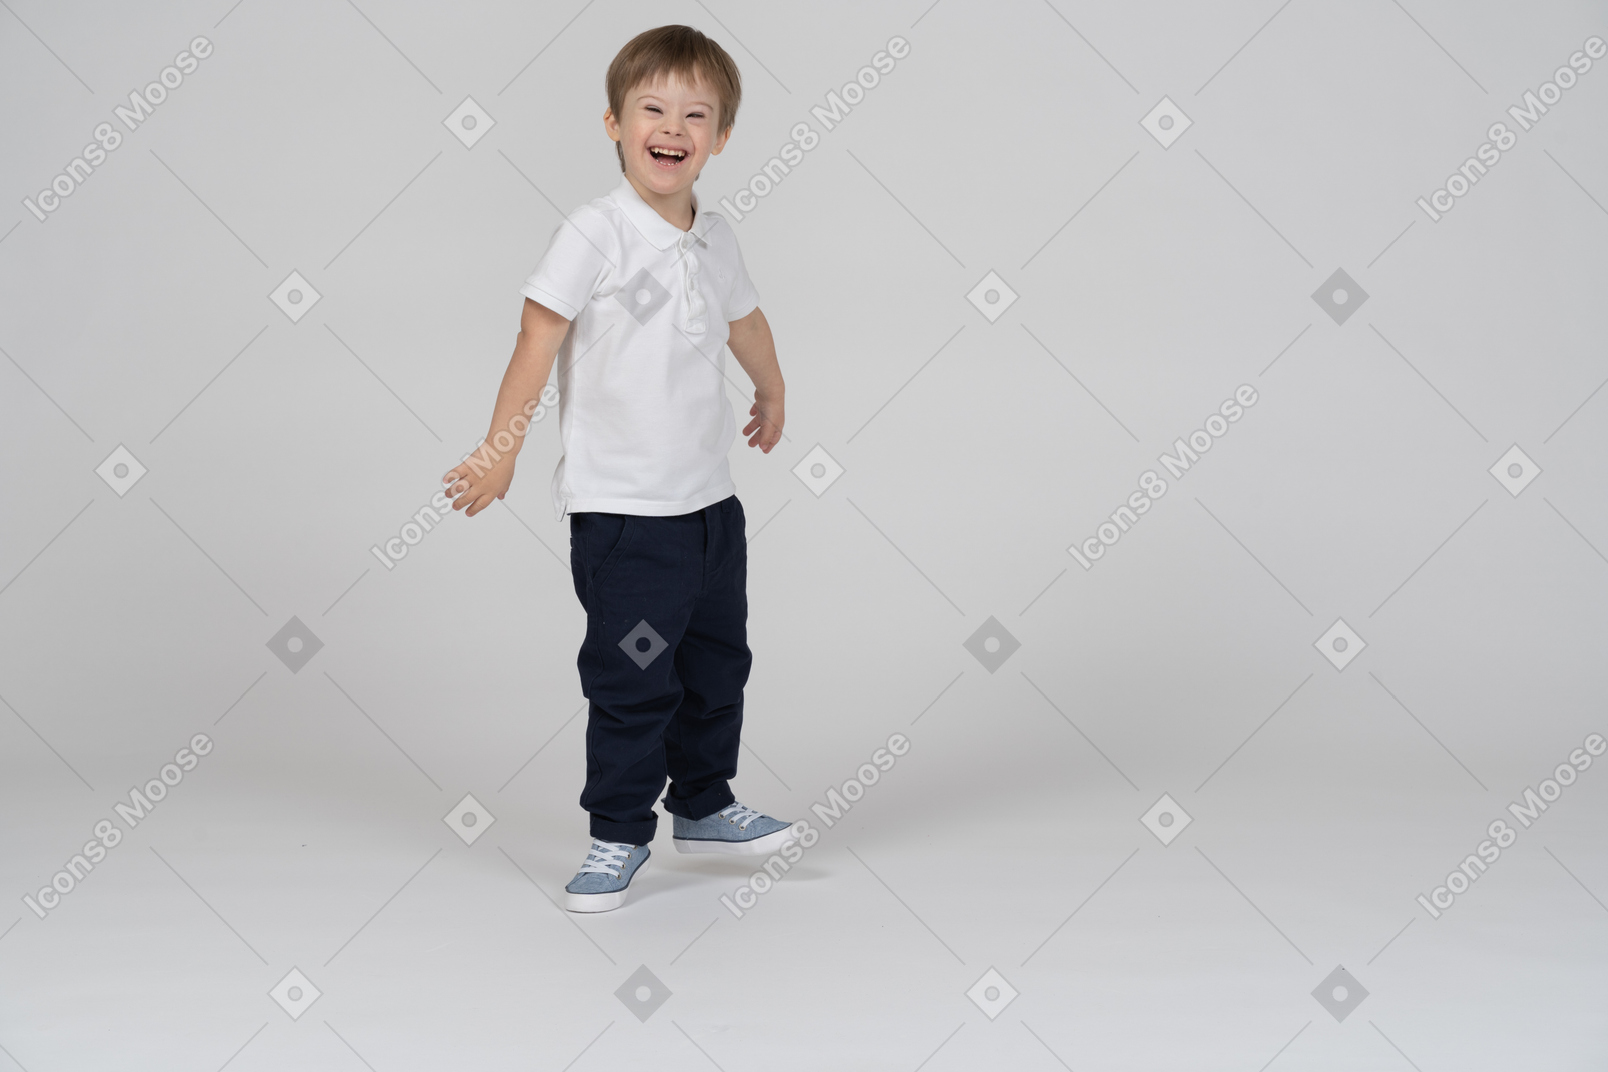 Vue de trois quarts d'un garçon debout et riant joyeusement